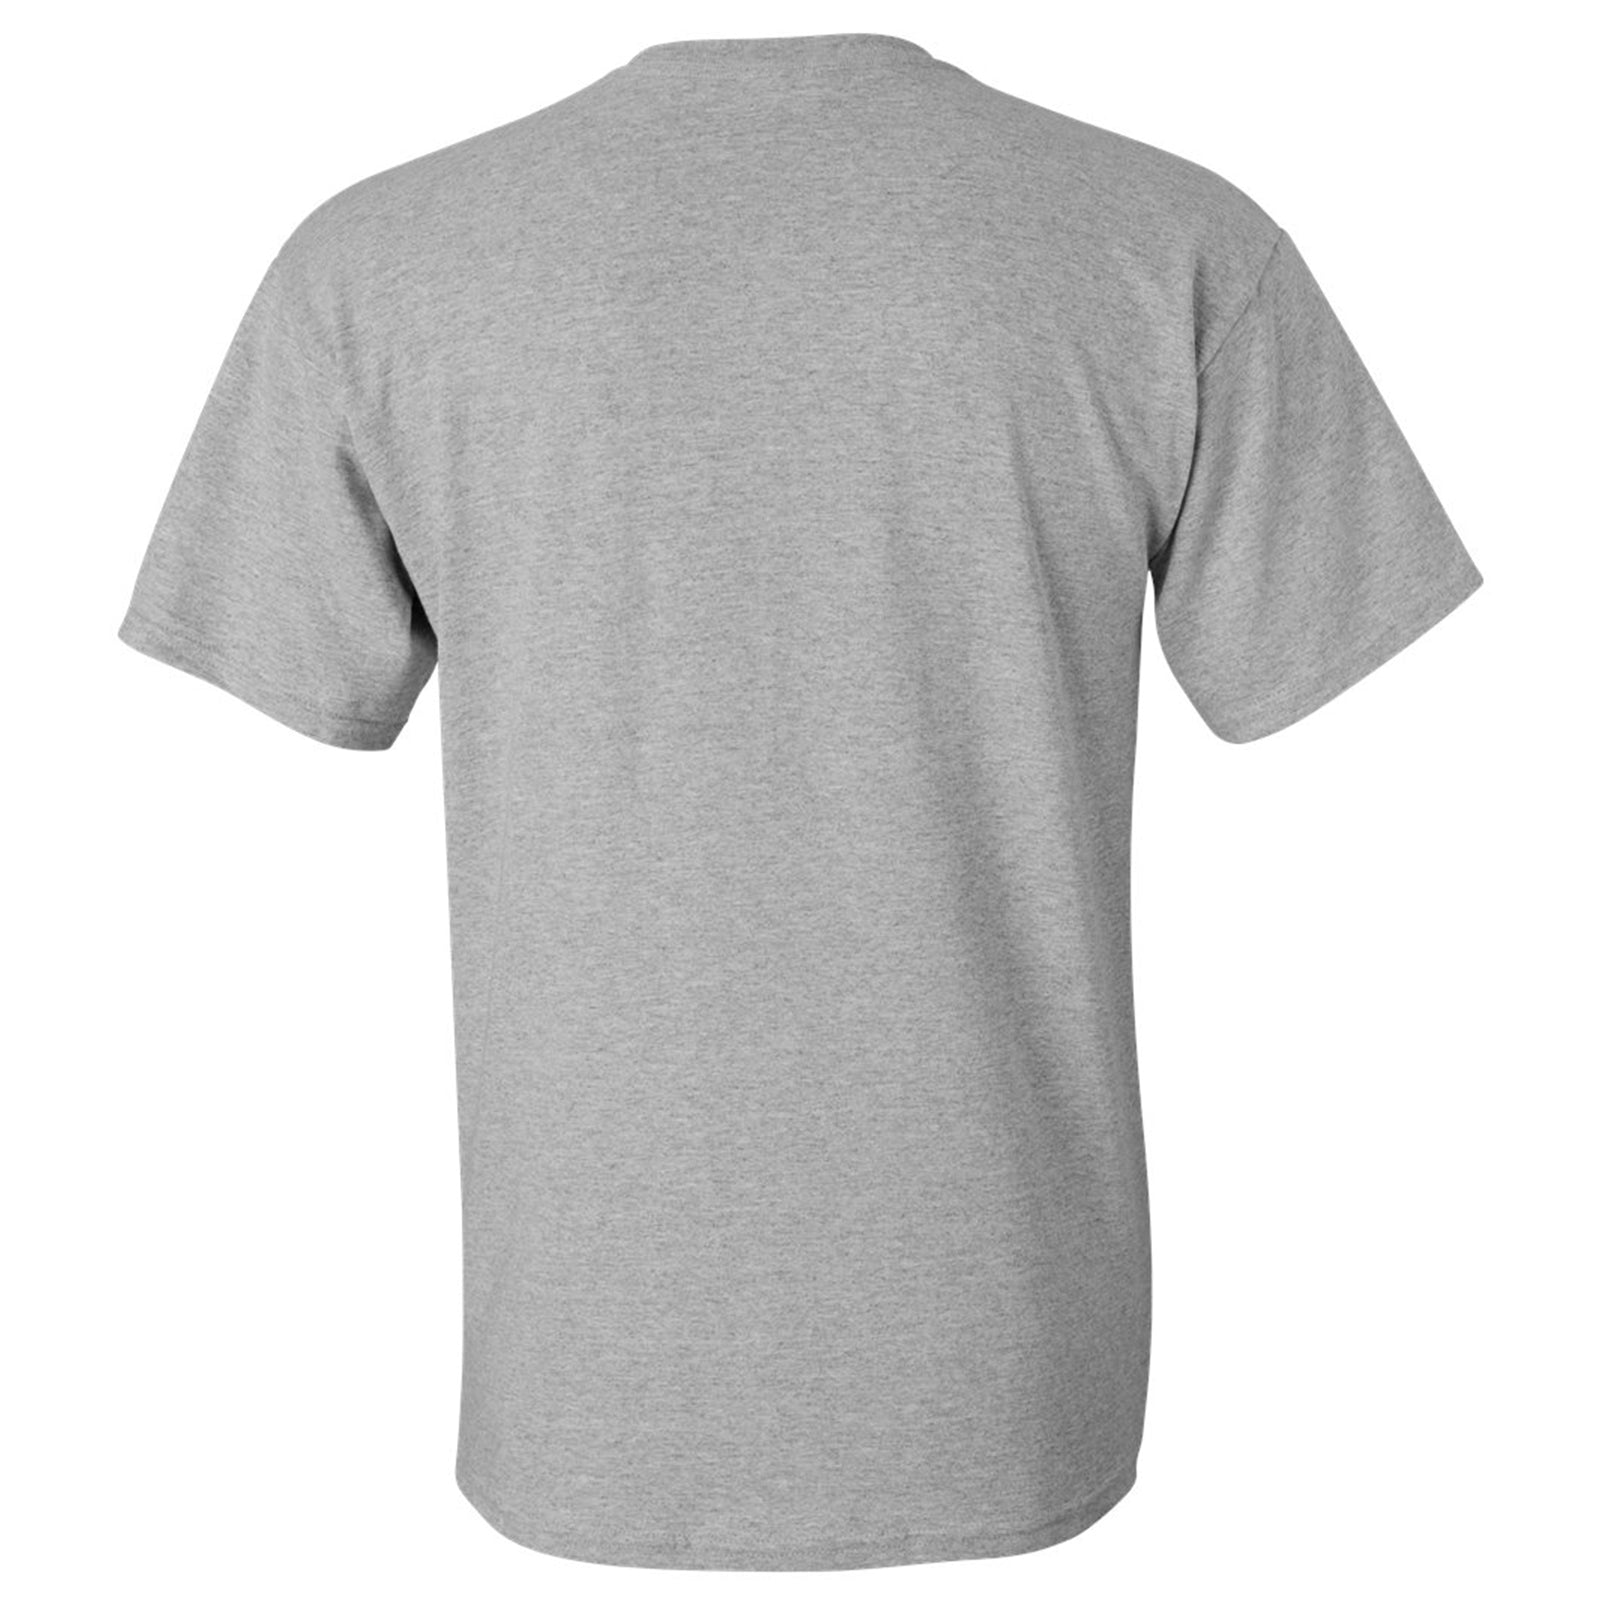 Milele Kifungu Unisex T-Shirt - Sports Grey – Underground Printing